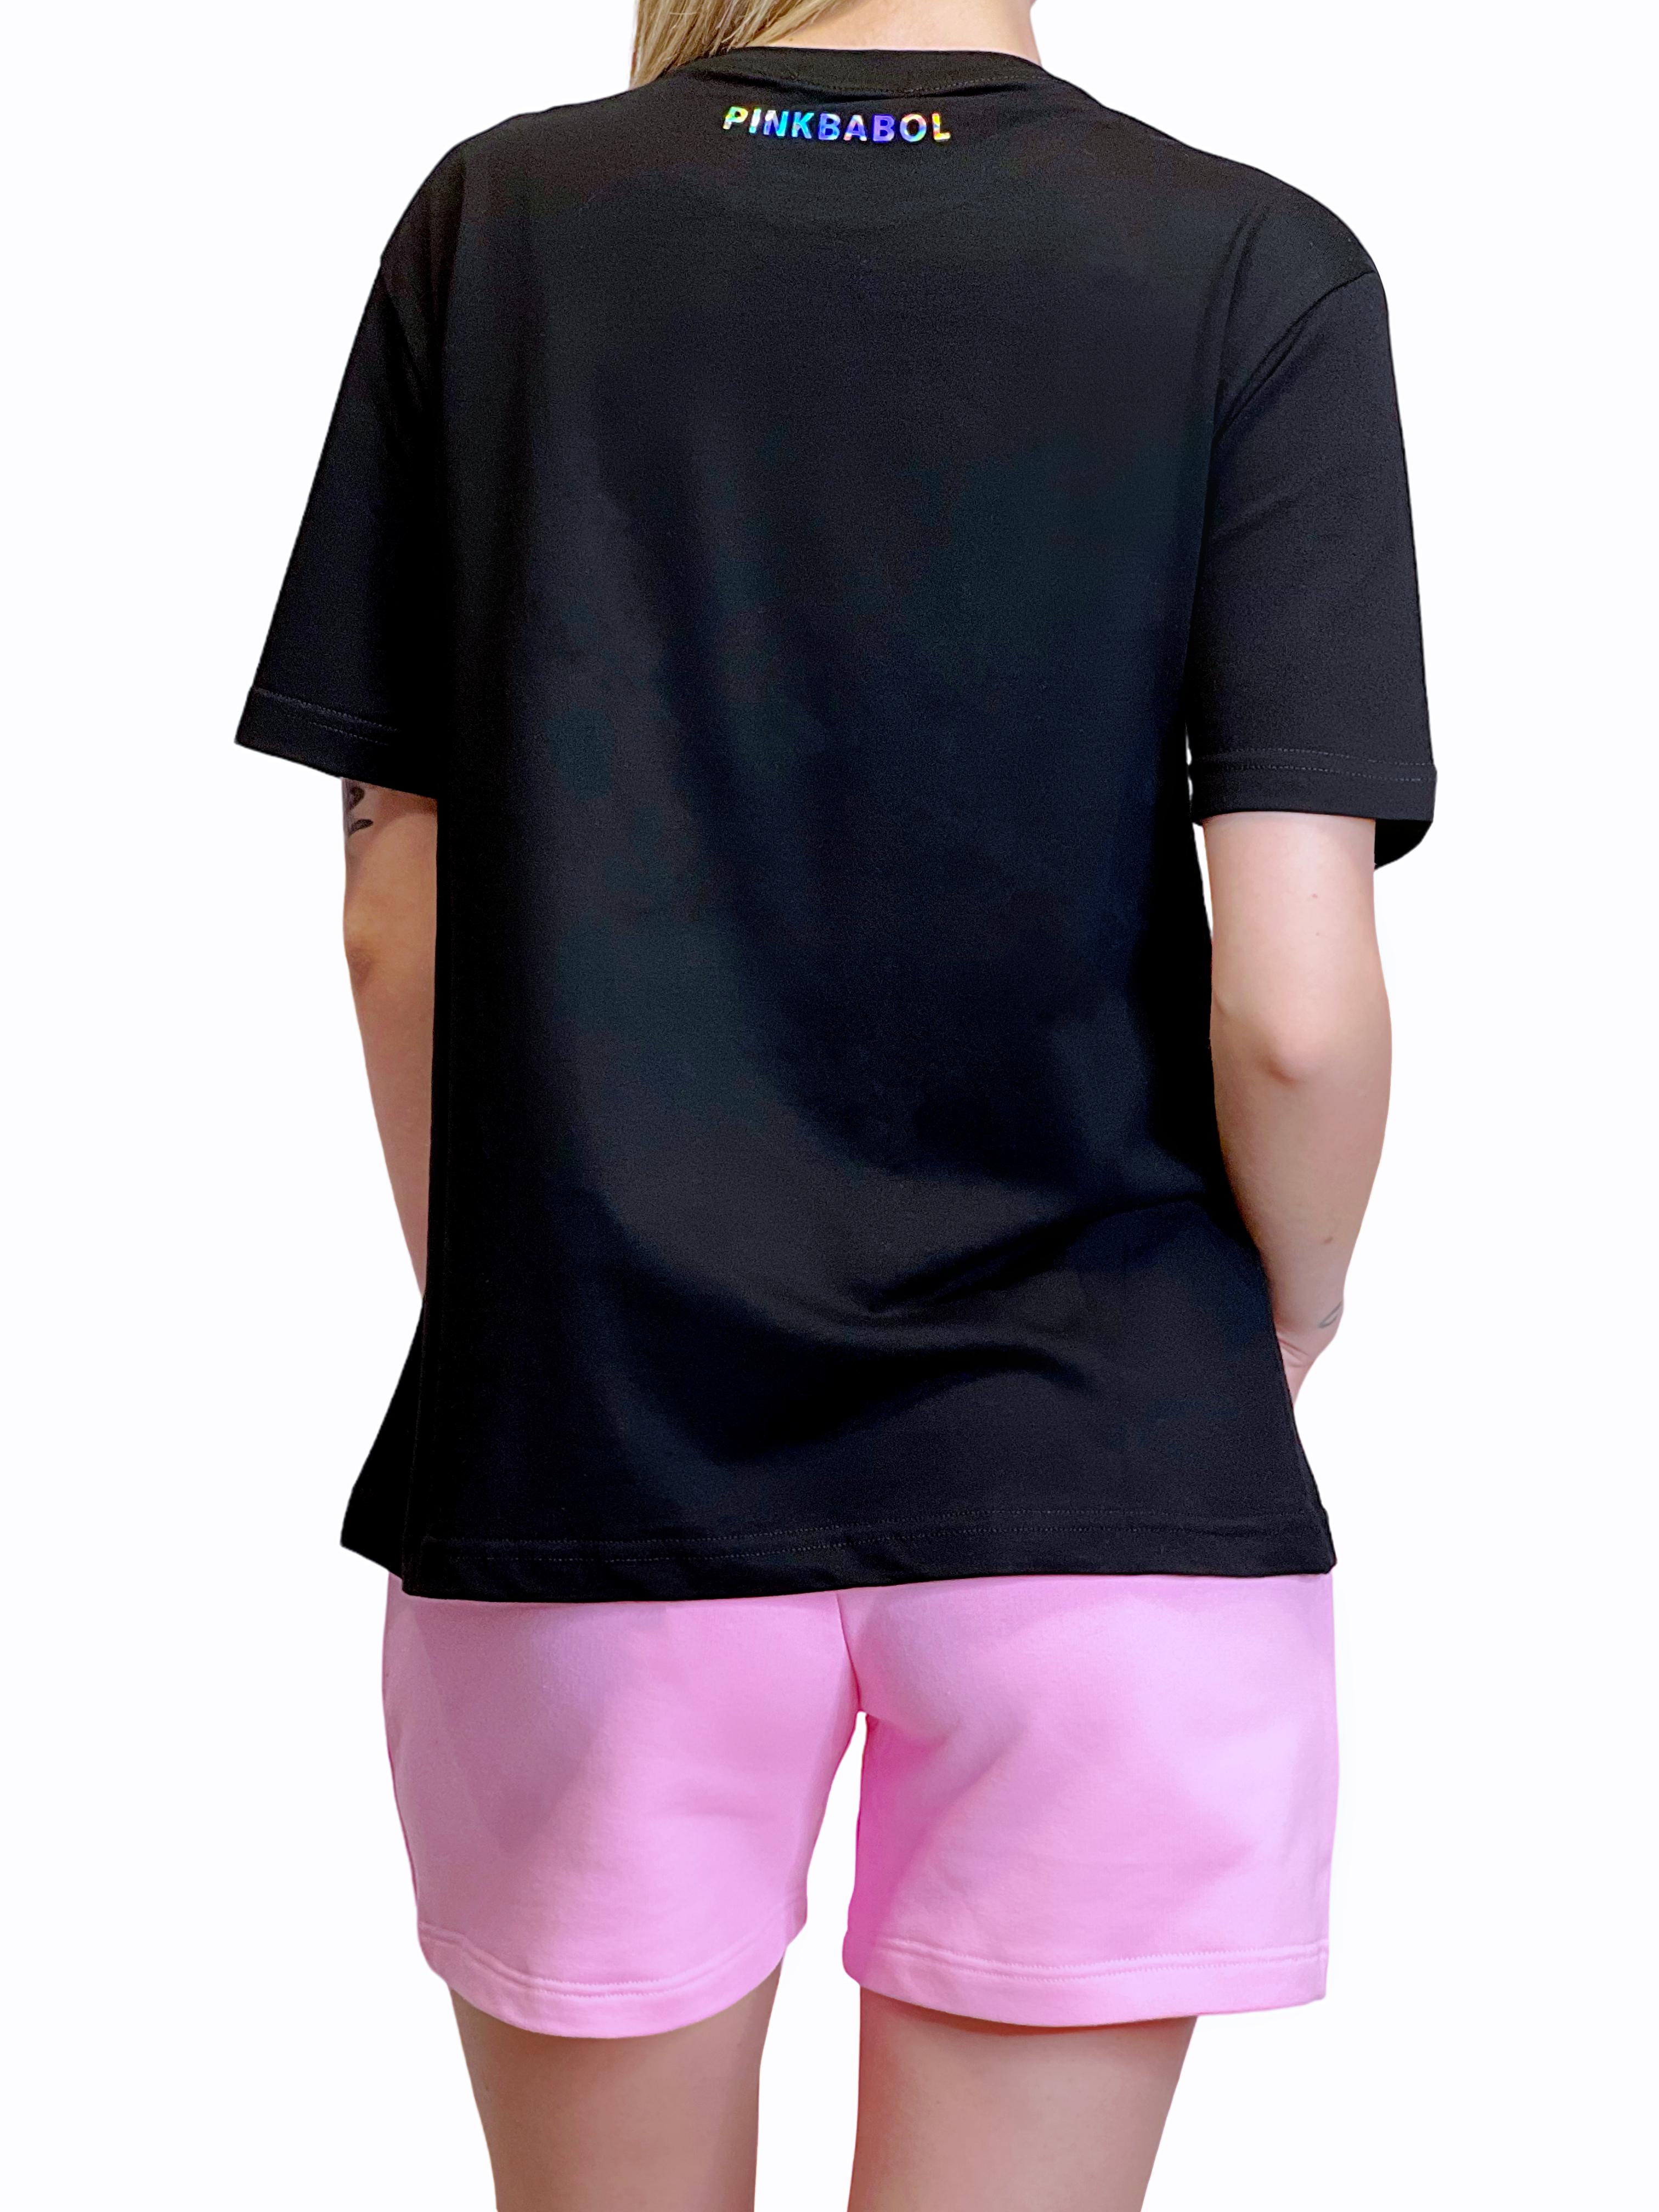 T-Shirt Regular Pink Babol Paint-Pink Babol